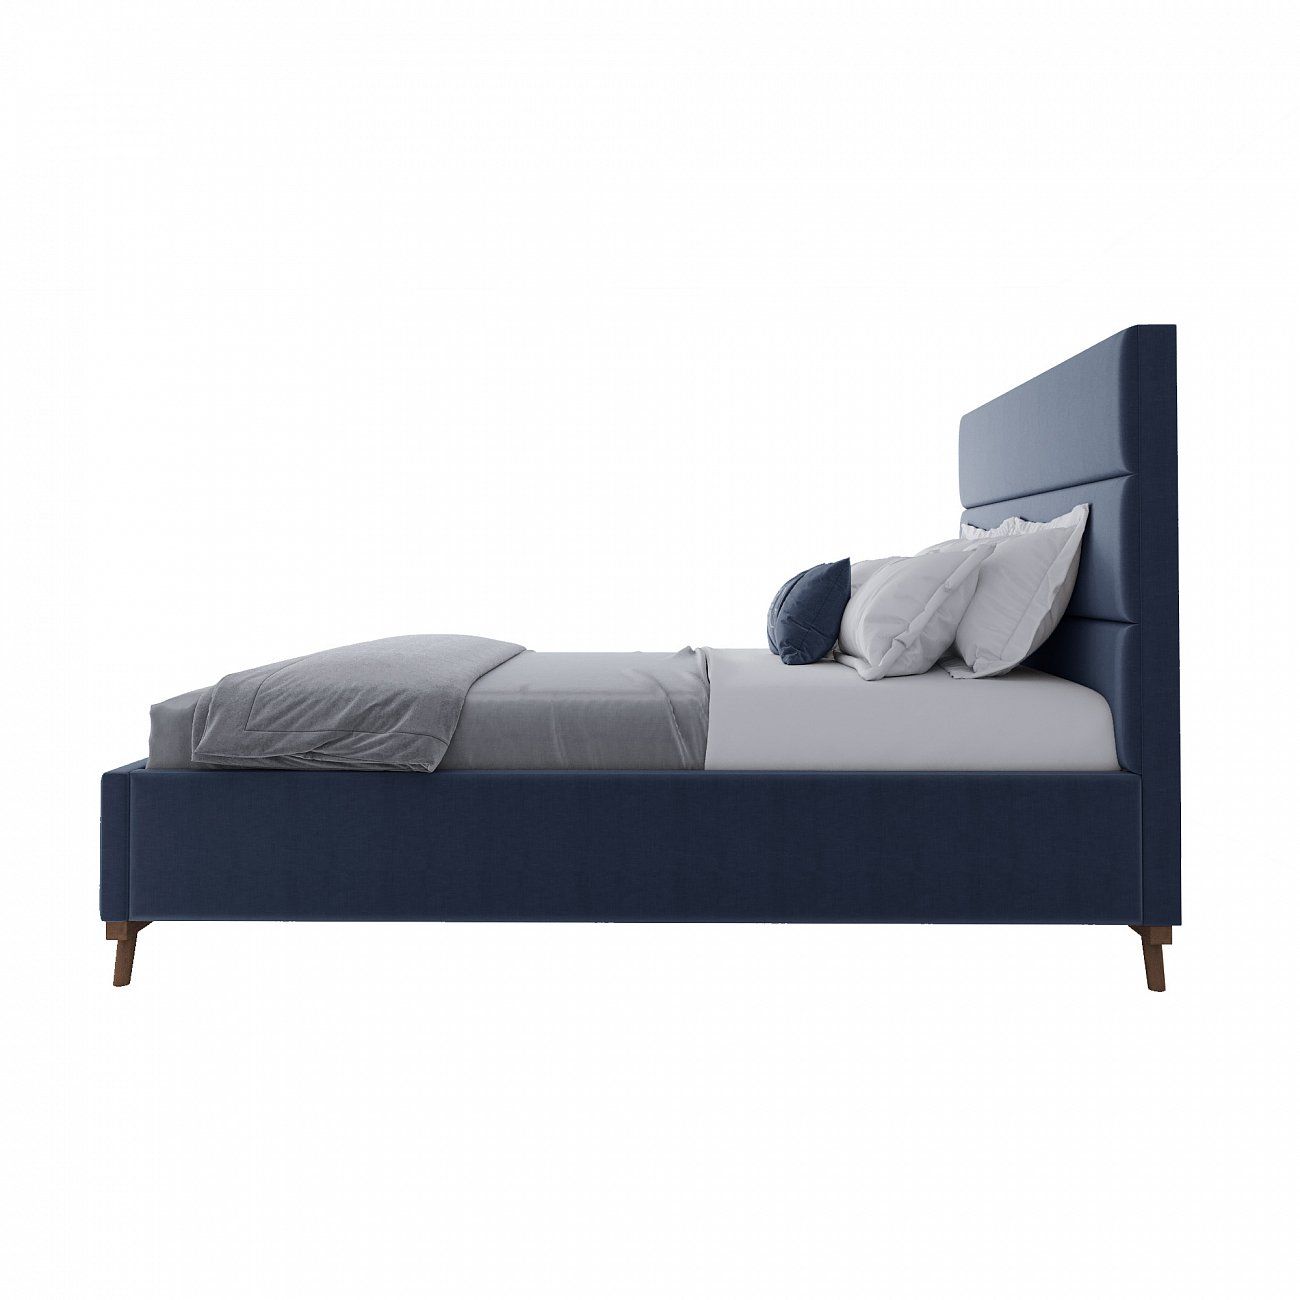 Кровать двуспальная 160х200 синяя Cooper Blueberry